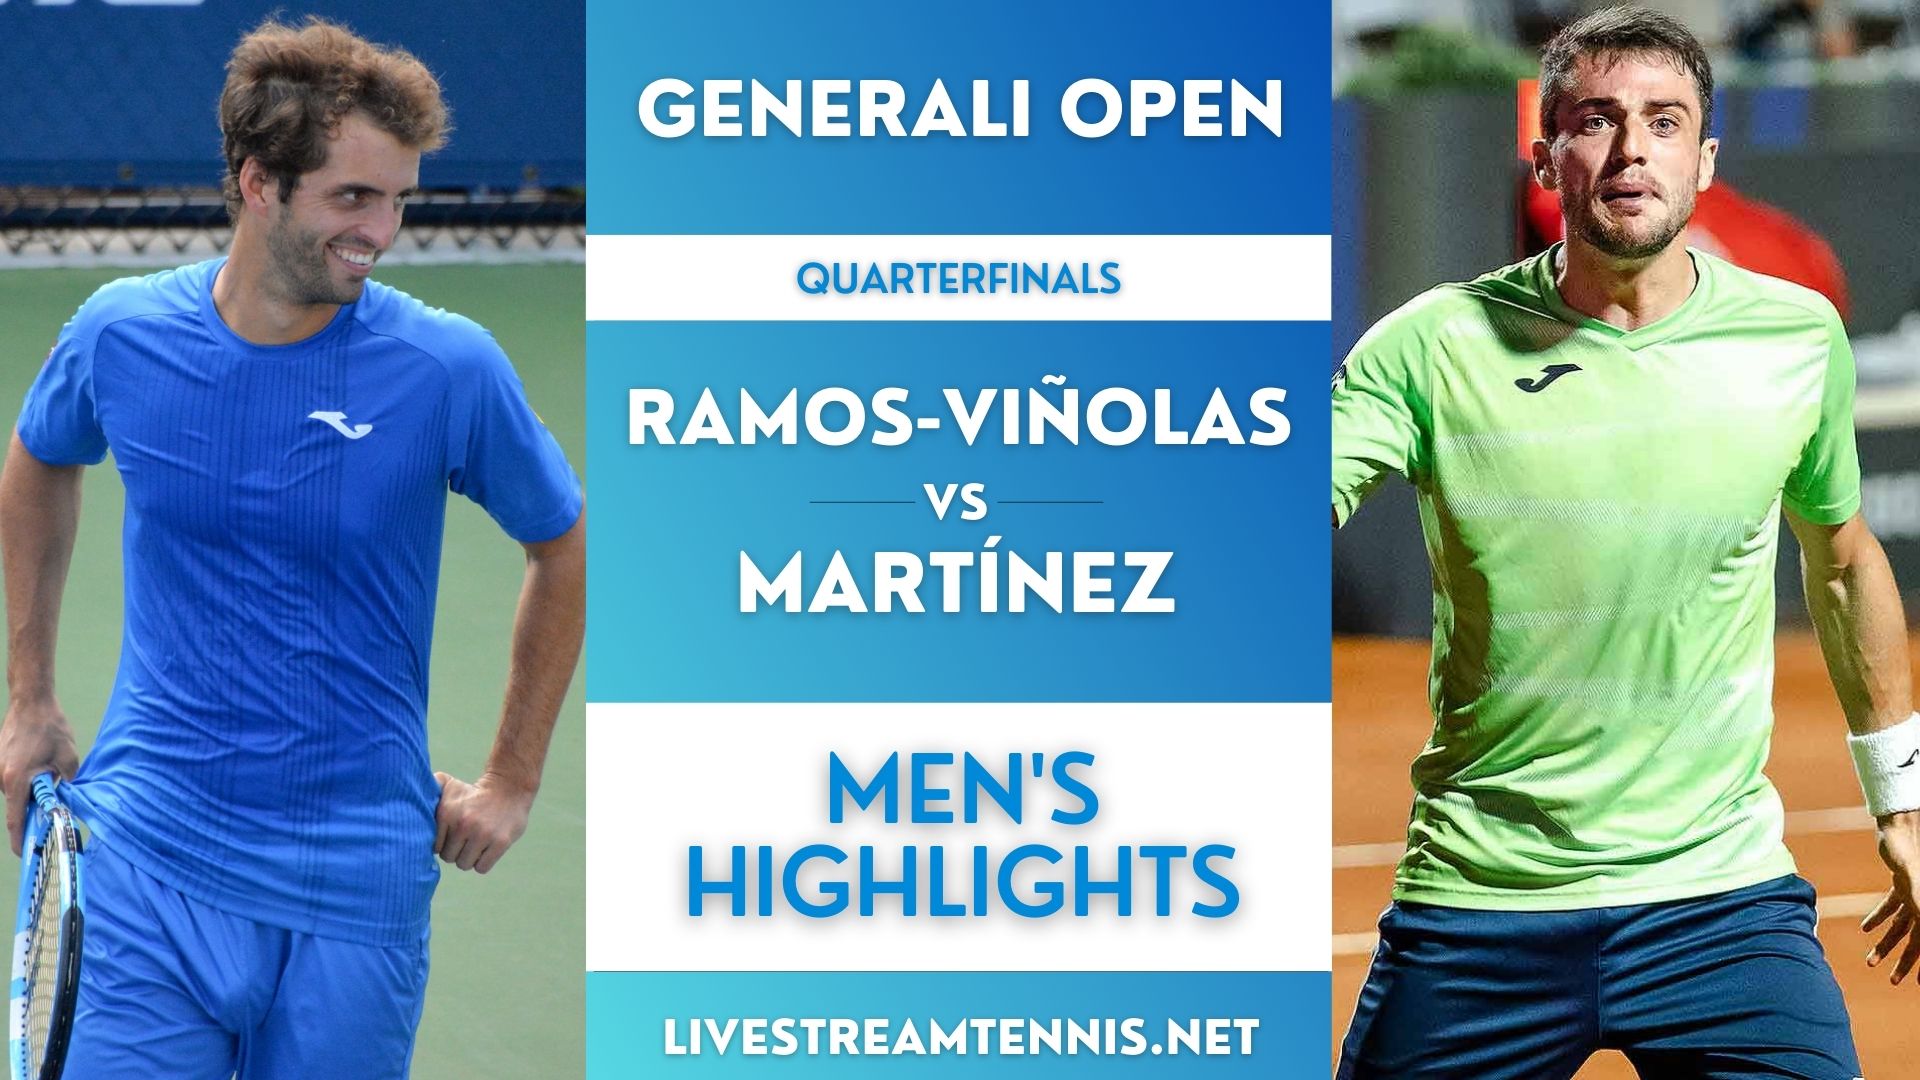 Generali Open ATP Quarterfinal 3 Highlights 2022